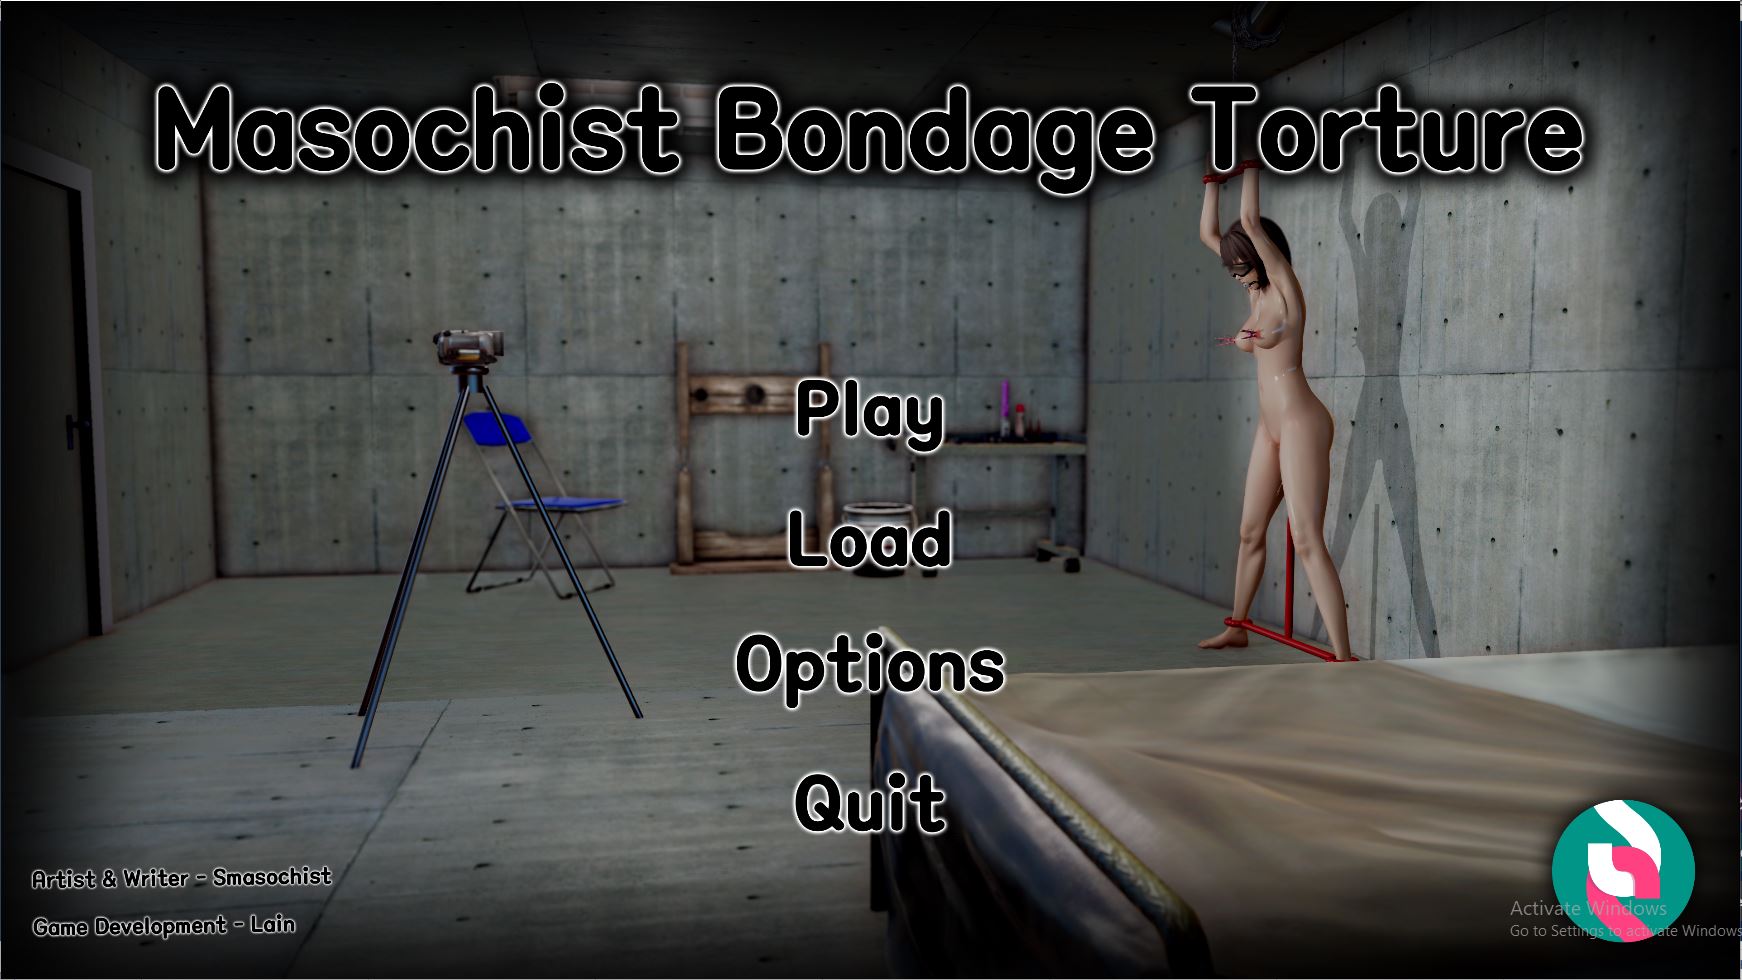 1742px x 980px - Adultgamesworld: Free Porn Games & Sex Games Â» Masochist Bondage Torture â€“  Version 0.1 [Smasochist â€“ Lain Games]